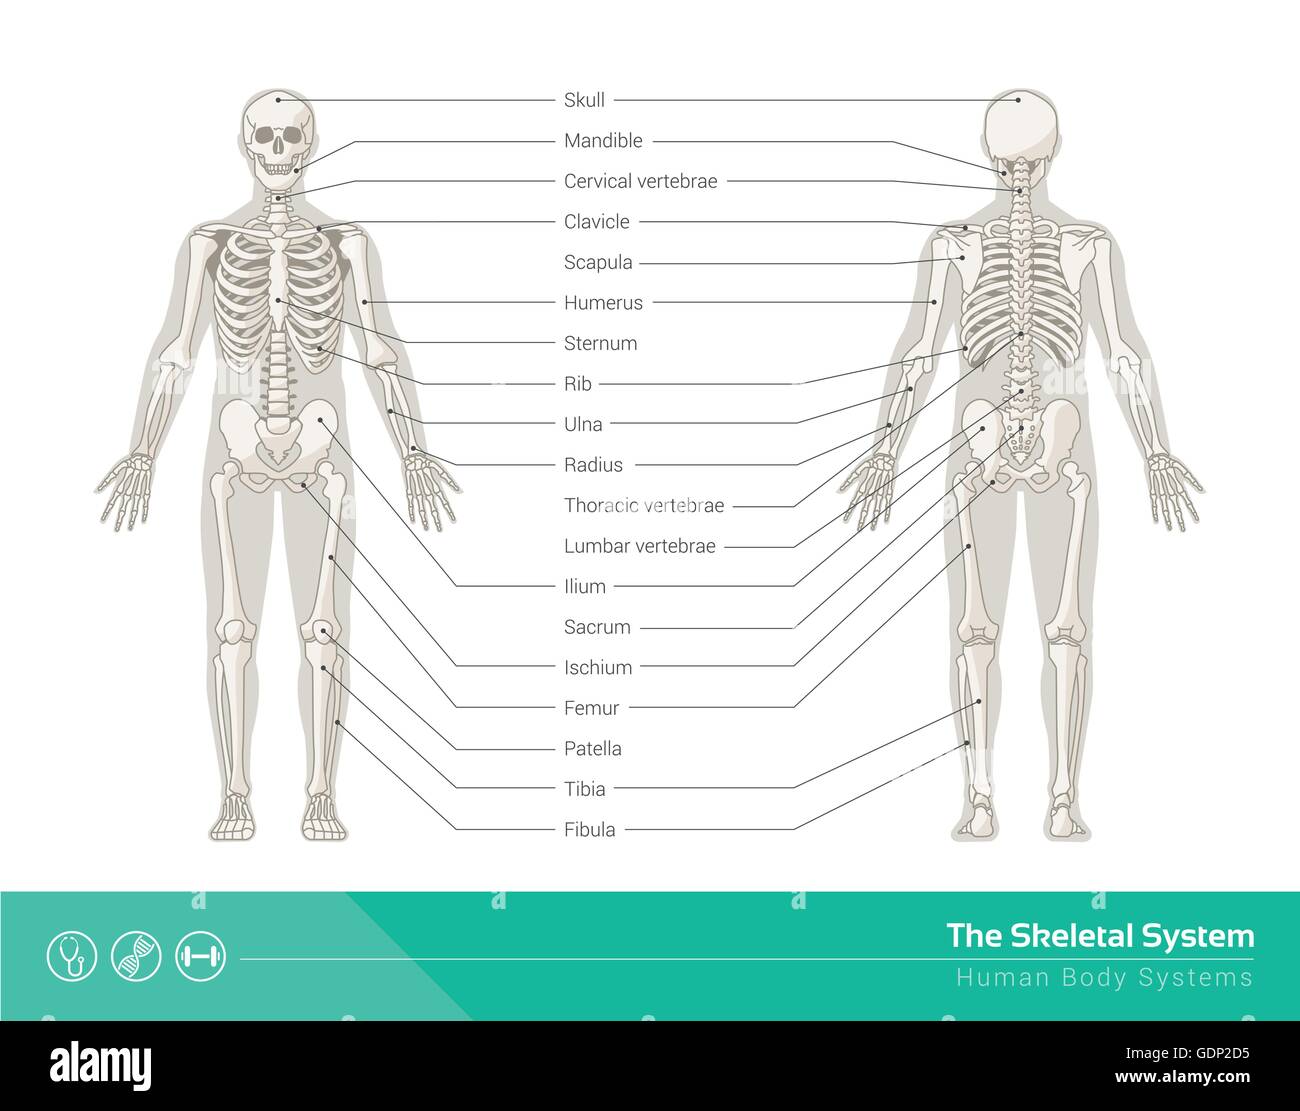 Le système squelettique humain, illustrations vectorielles de squelette humain vue avant et arrière Illustration de Vecteur